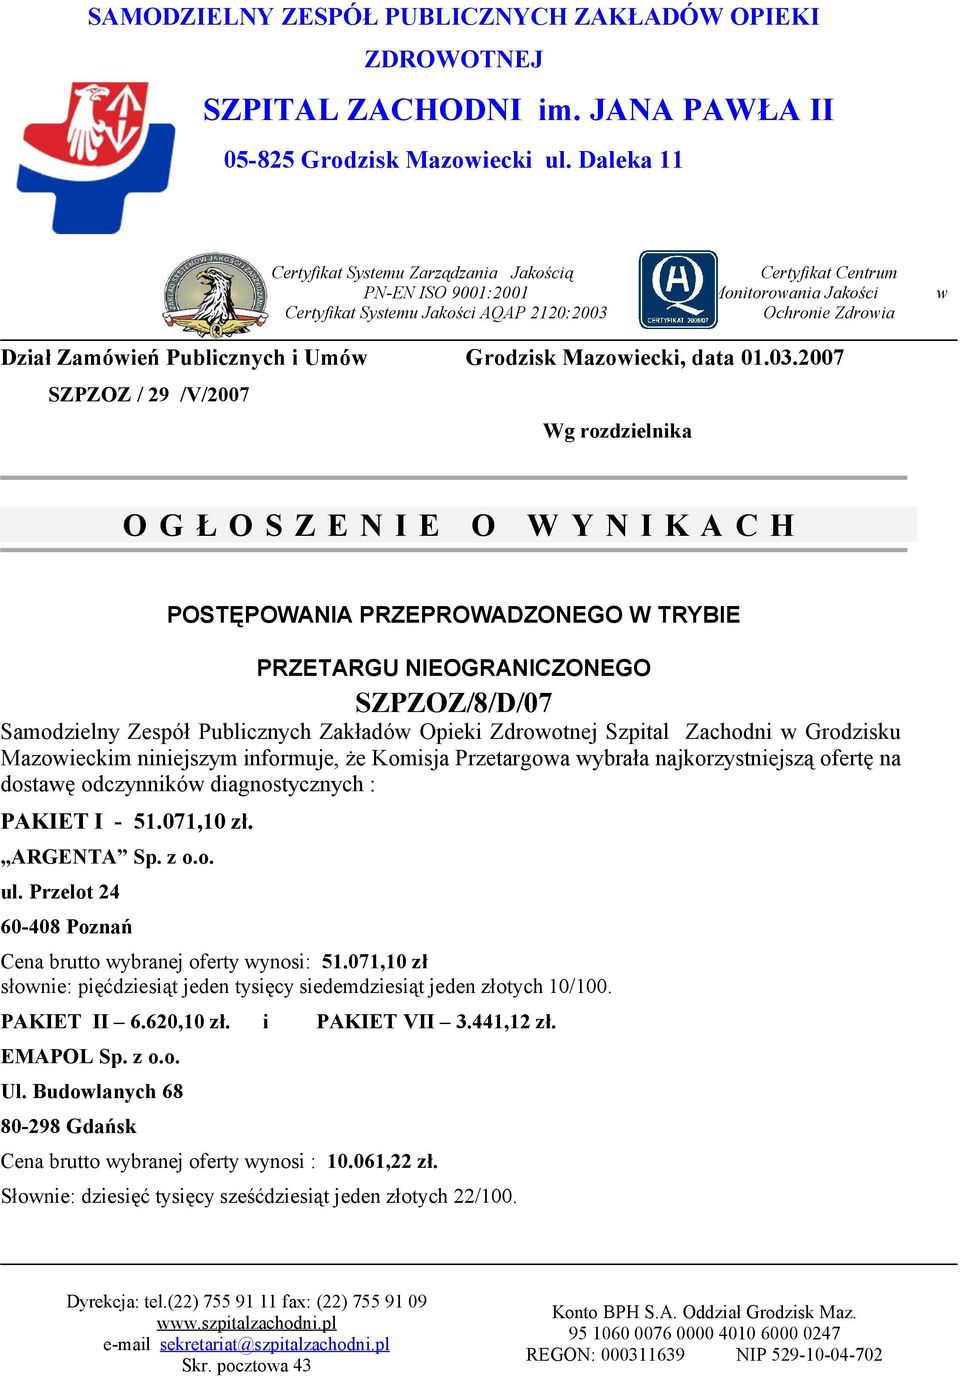 Opieki Zdrootnej Szpital Zachodni Grodzisku Mazoieckim niniejszym informuje, że Komisja Przetargoa ybrała najkorzystniejszą ofertę na dostaę odczynnikó diagnostycznych : PAKIET I - 51.071,10 zł.